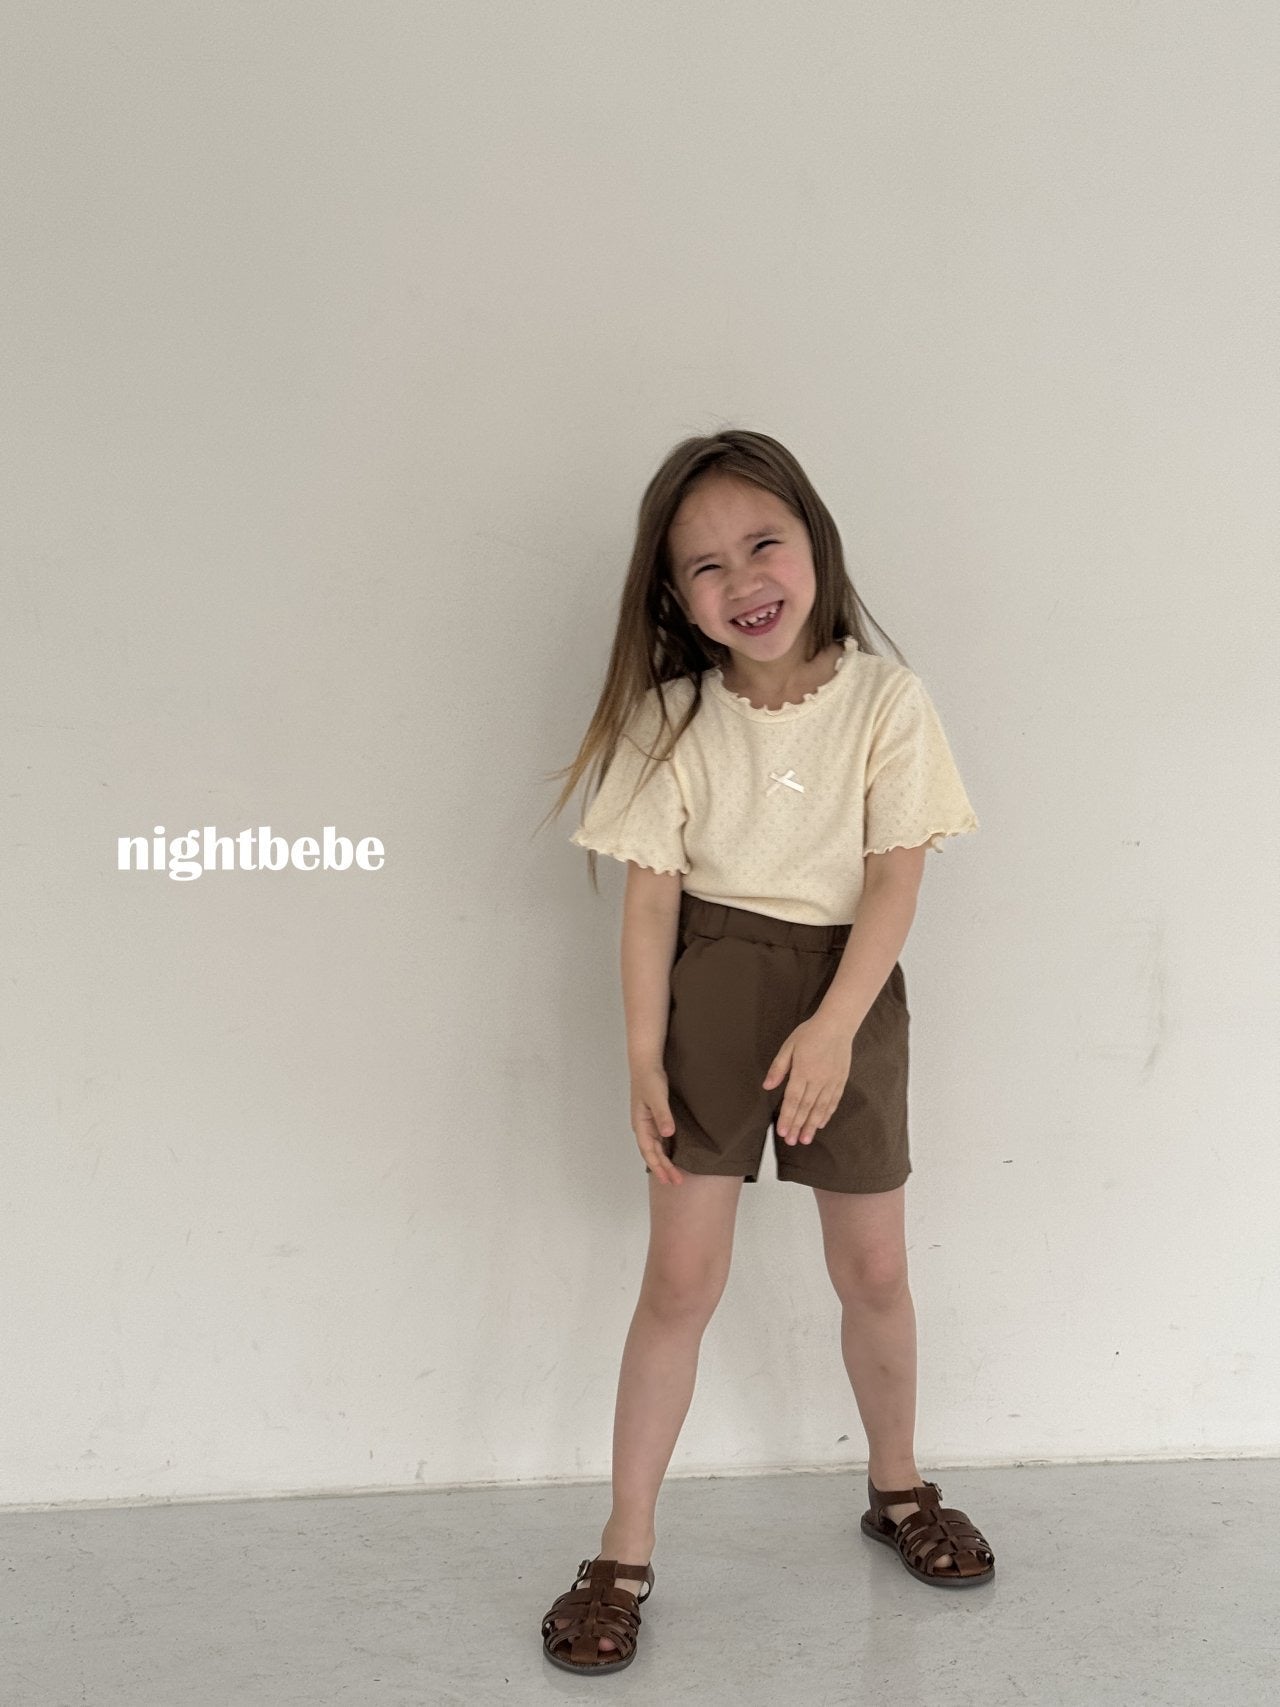 Nightbebe Eyelet ribbon short sleeves (kids 80-120cm)